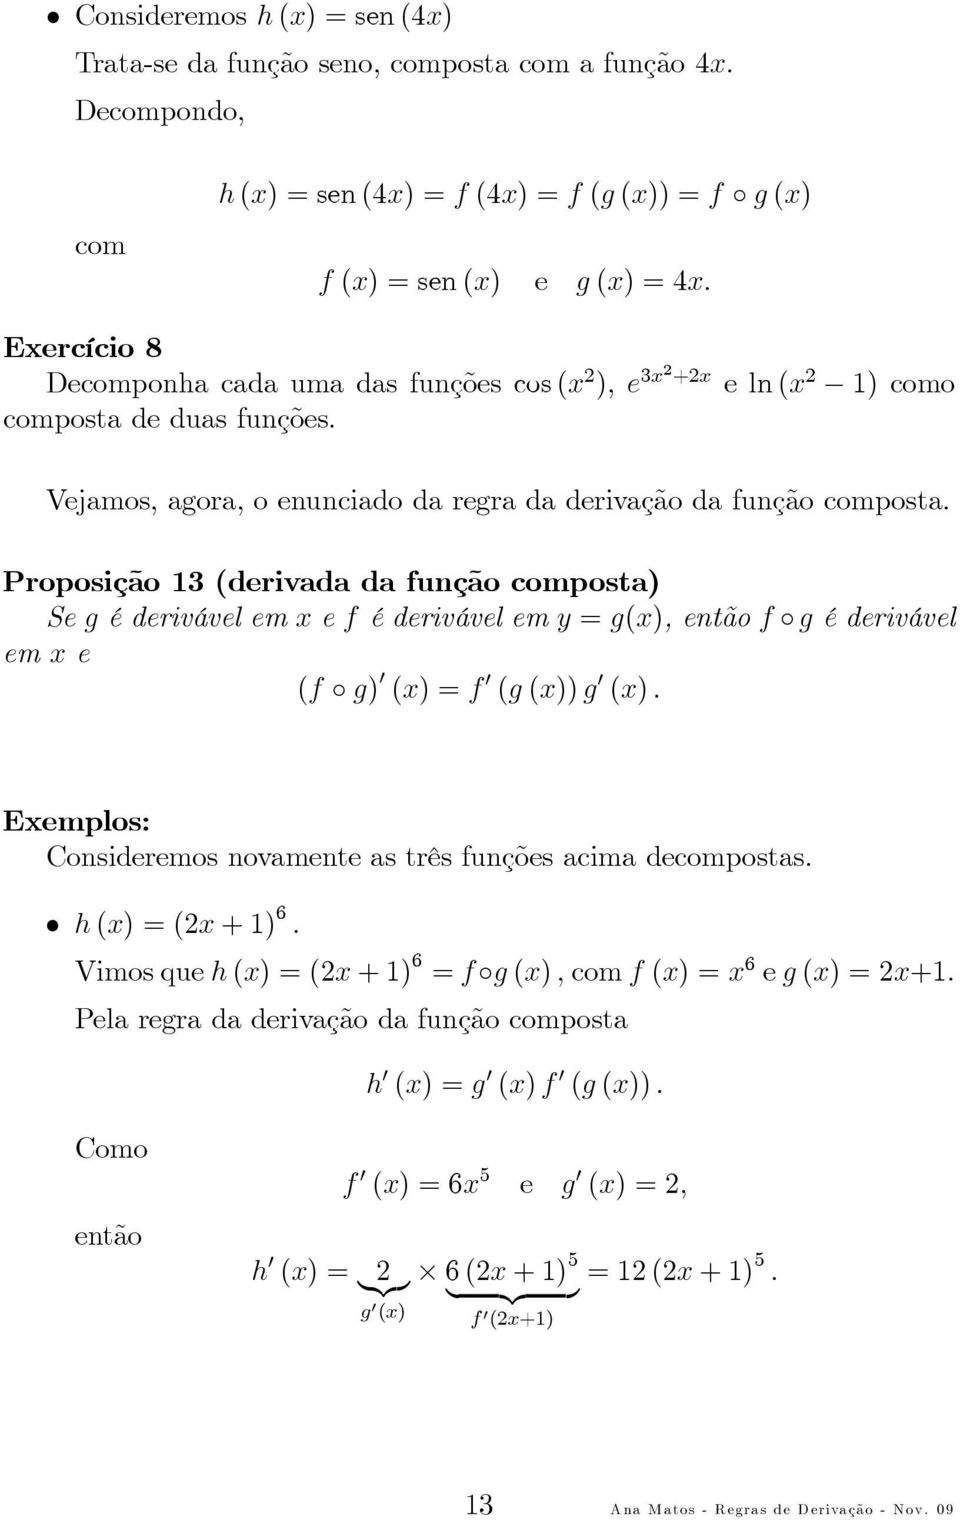 Proposição 3(derivada da função composta) Segéderivávelemxef éderivávelemy=g(x),entãof géderivável emxe (f g) (x)=f (g(x))g (x). Exemplos: Consideremos novamente as três funções acima decompostas.